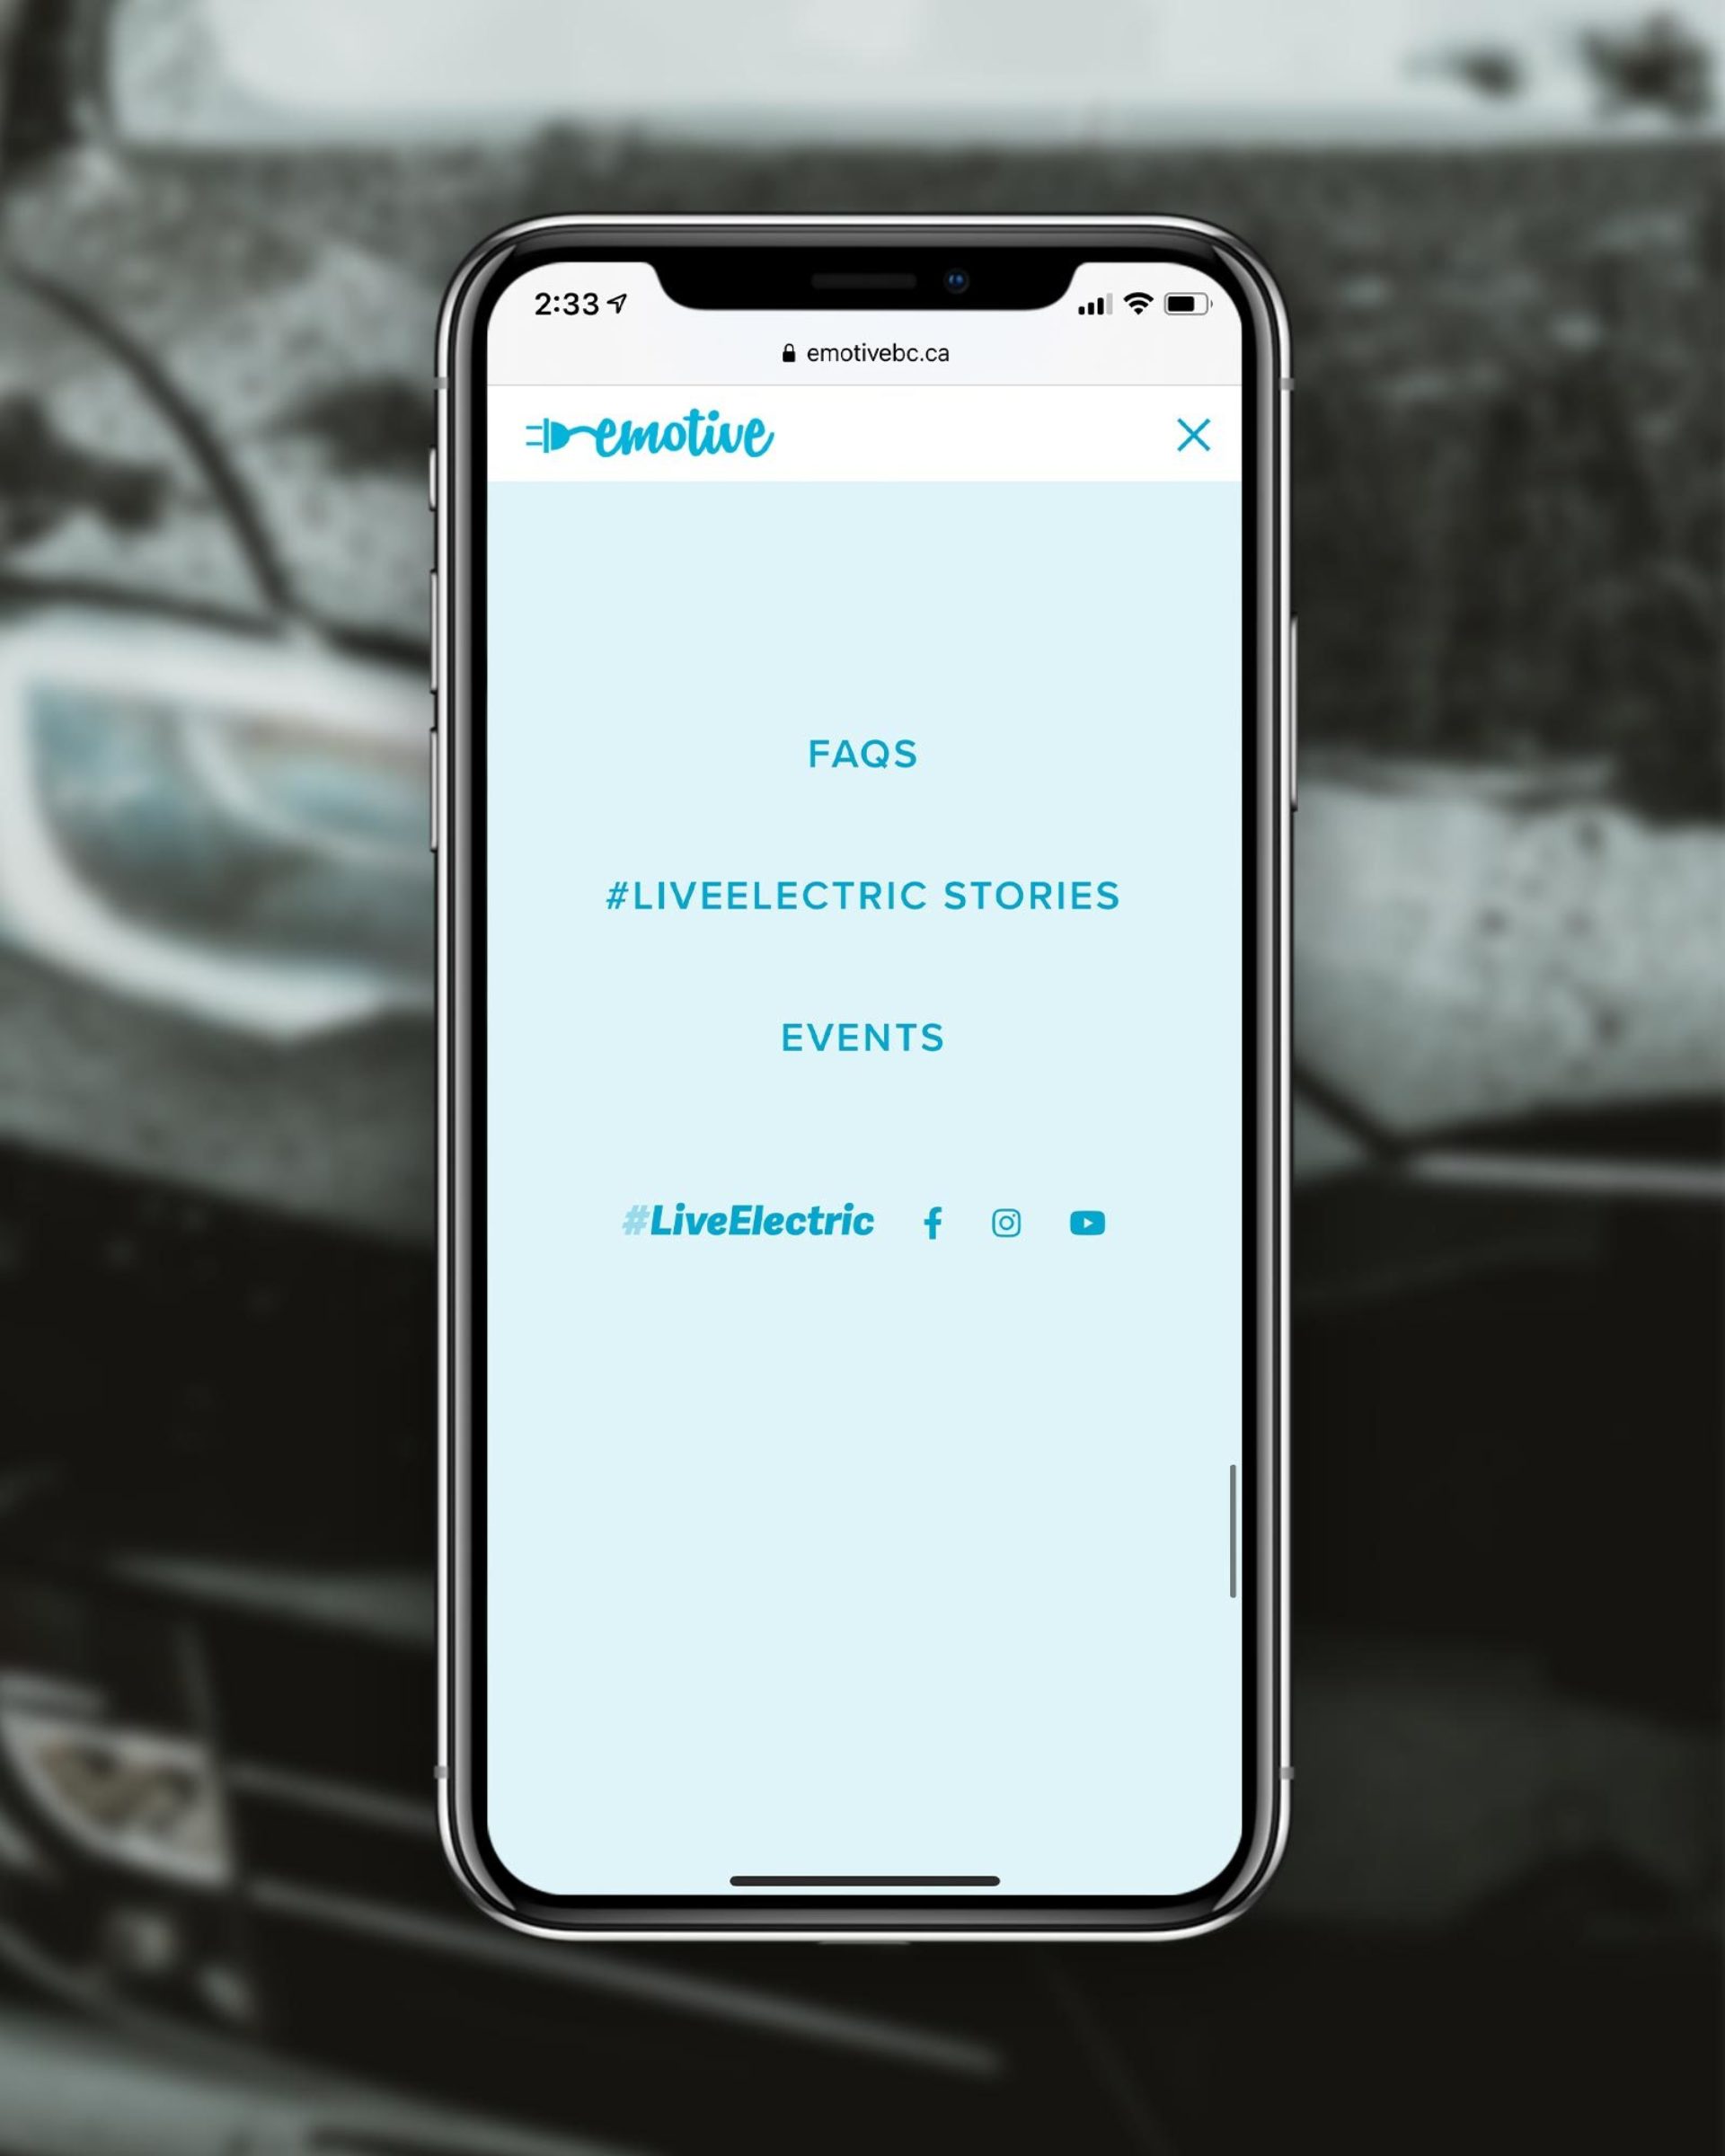 The mobile menu on the Emotive website